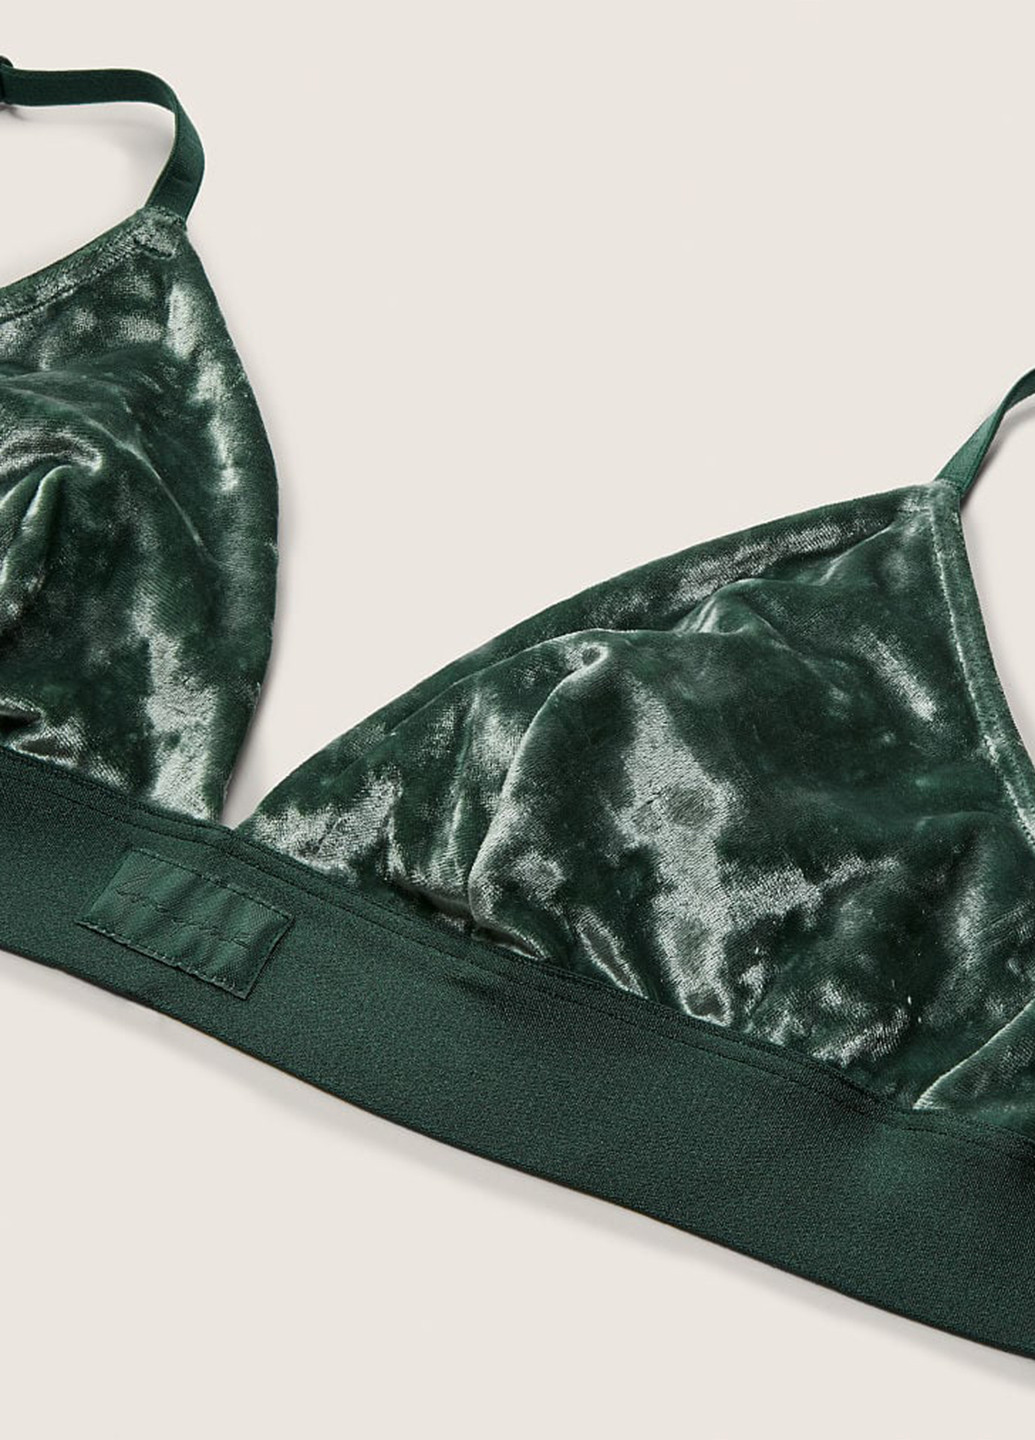 Зелёный бралетт бюстгальтер Victoria's Secret без косточек велюр, полиэстер